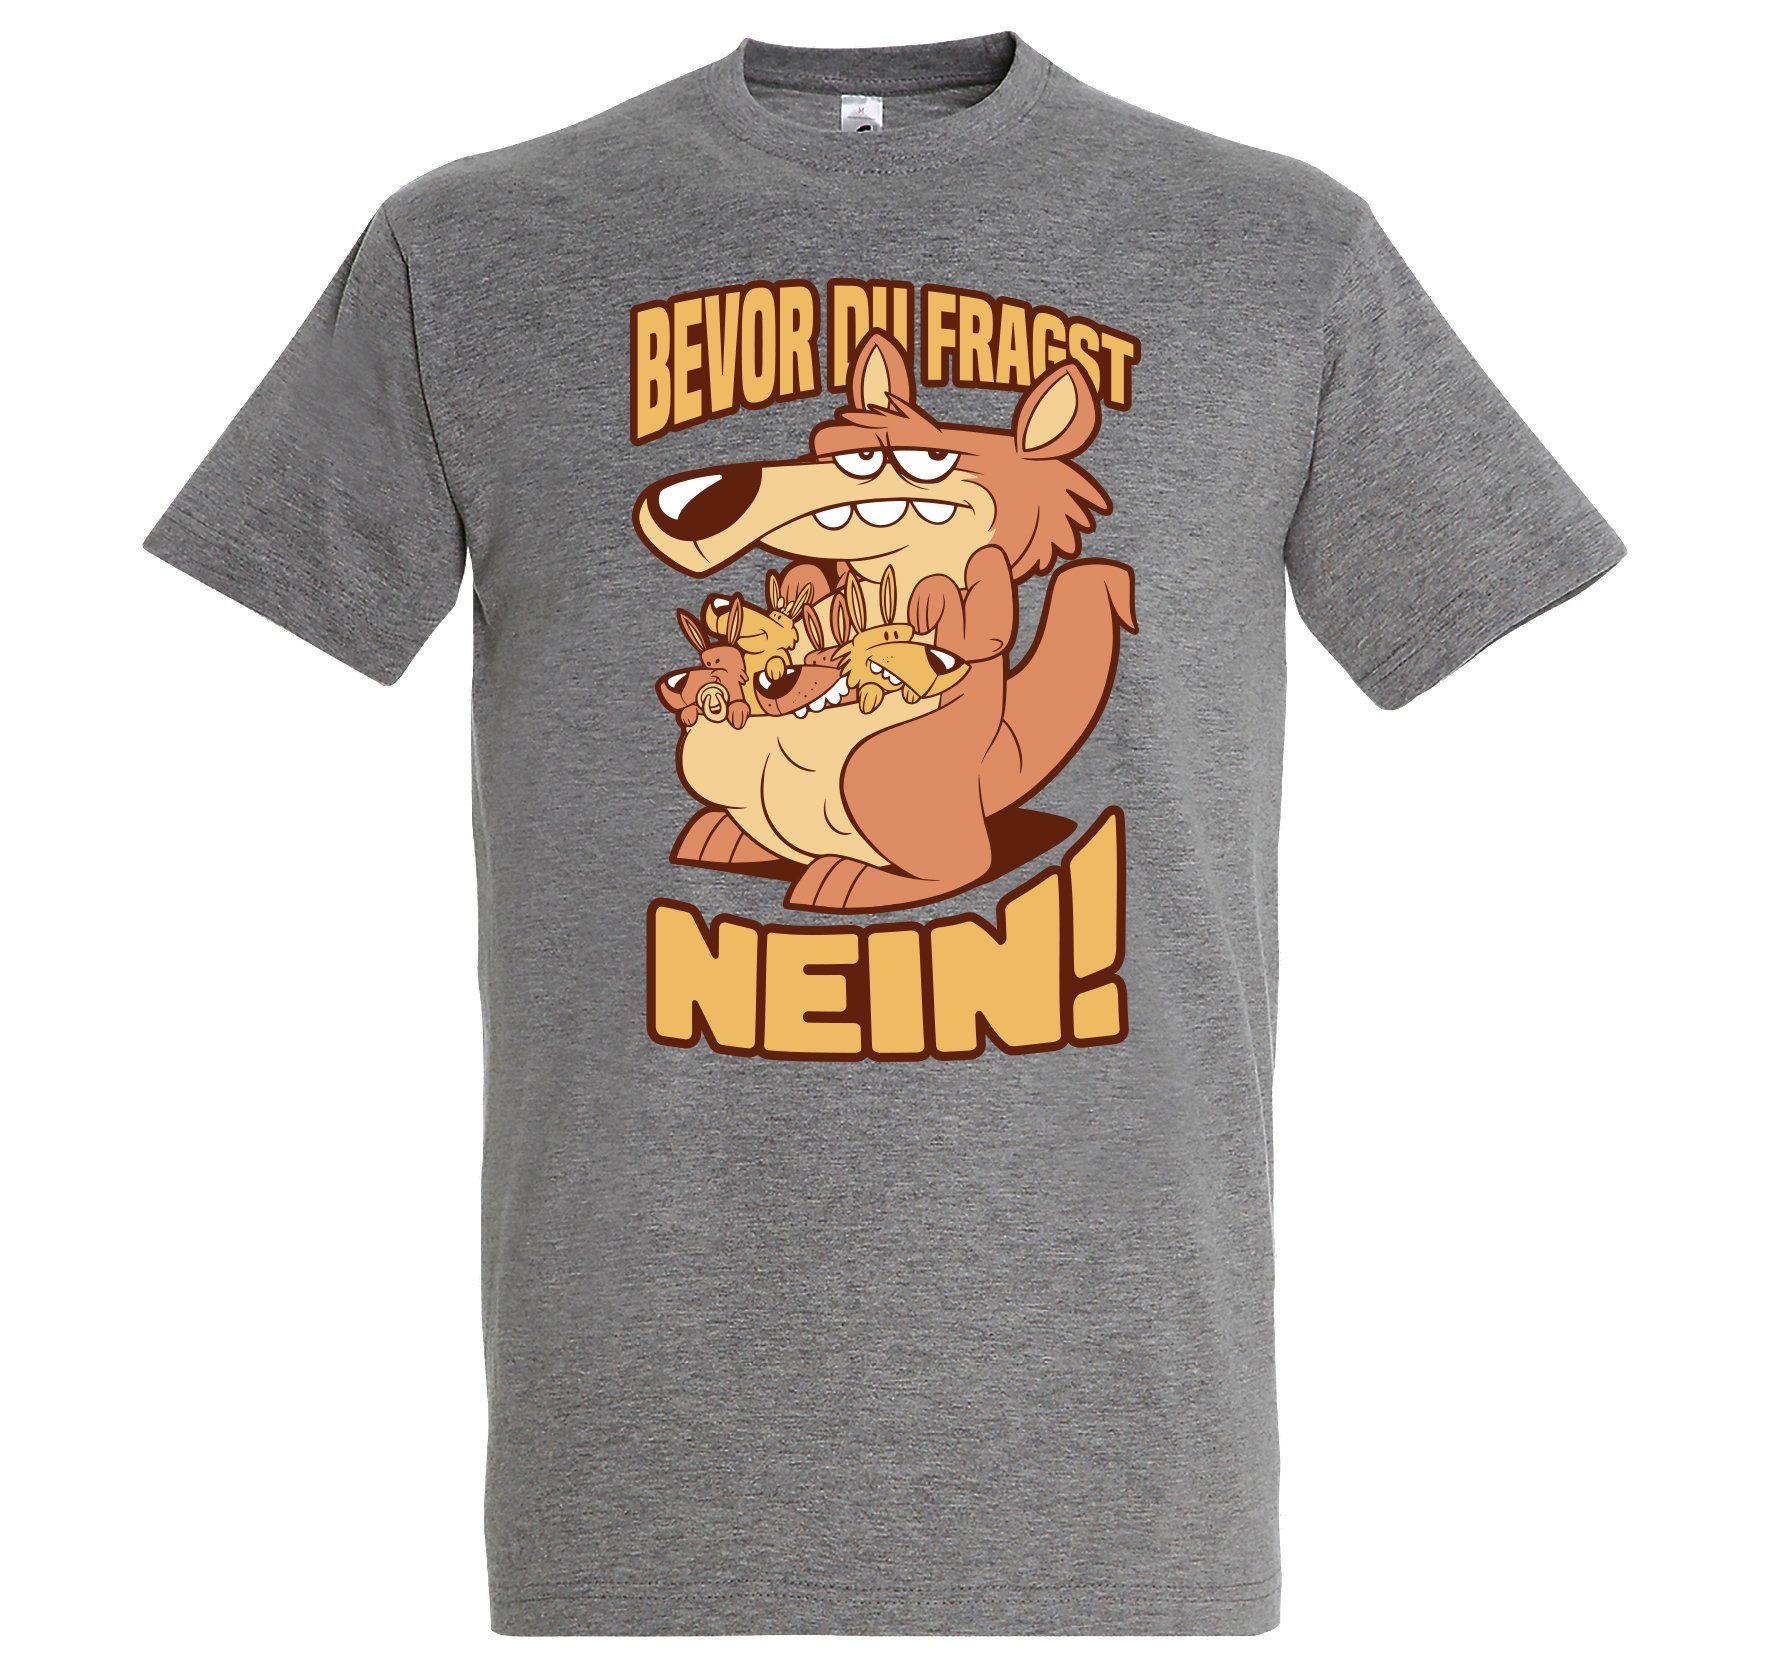 Youth Designz Print-Shirt Herren T-Shirt BEVOR DU FRAGST NEIN mit lustigem Spruch Aufdruck Grau